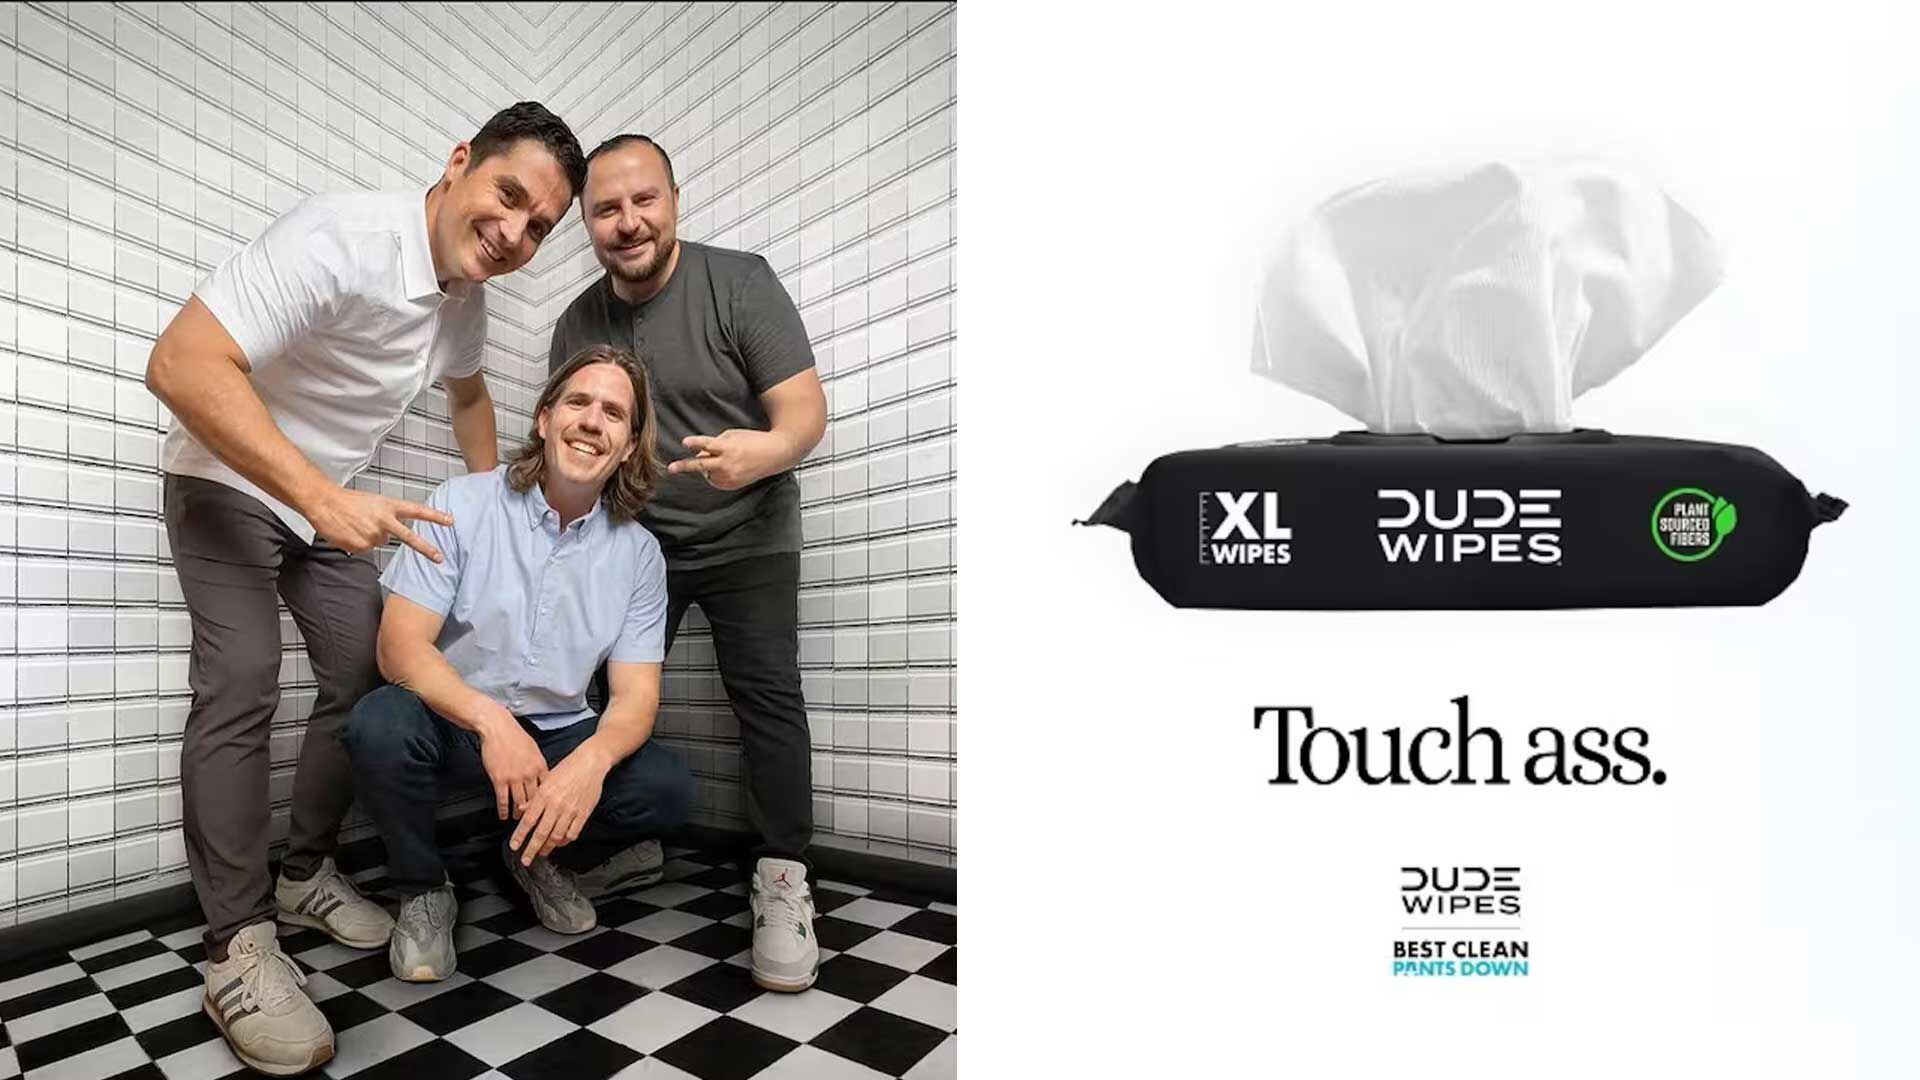 Sean Riley, Ryan Meegan y Jeff Klimkowski, fundadores de Dude Products, lograron revolucionar la industria del papel higiénico tras su victoria en Shark Tank en 2015.